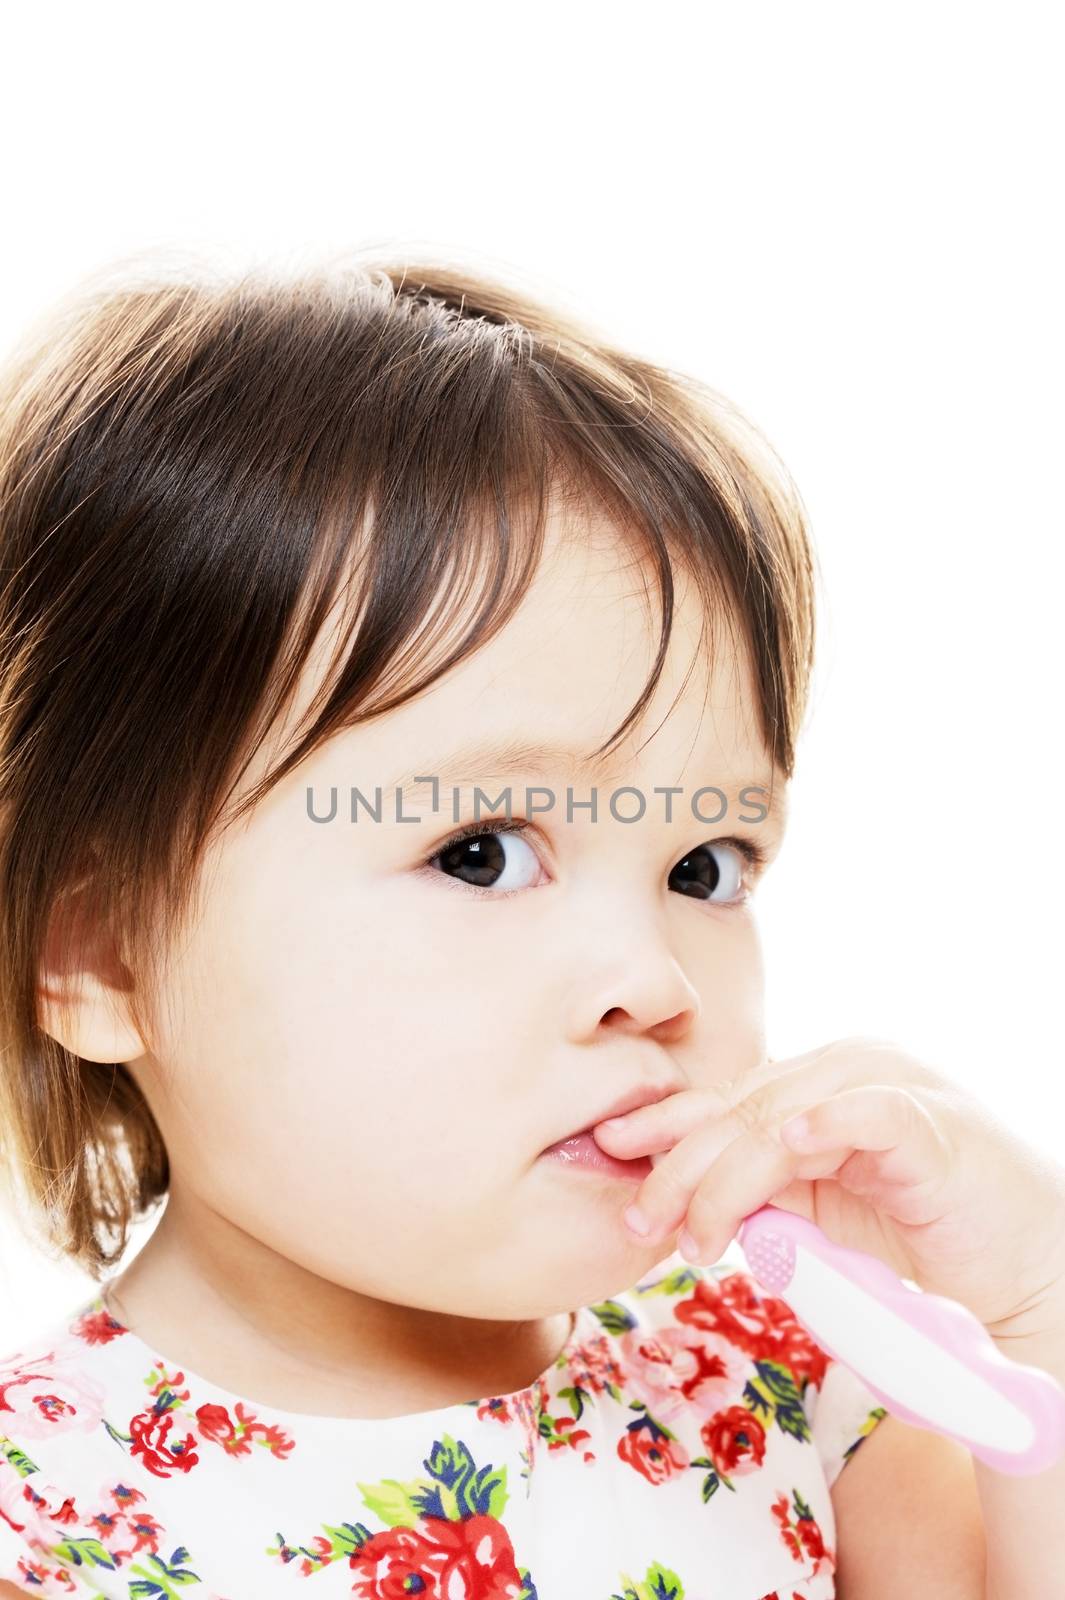 Young girl brushing teeth closeup portrait